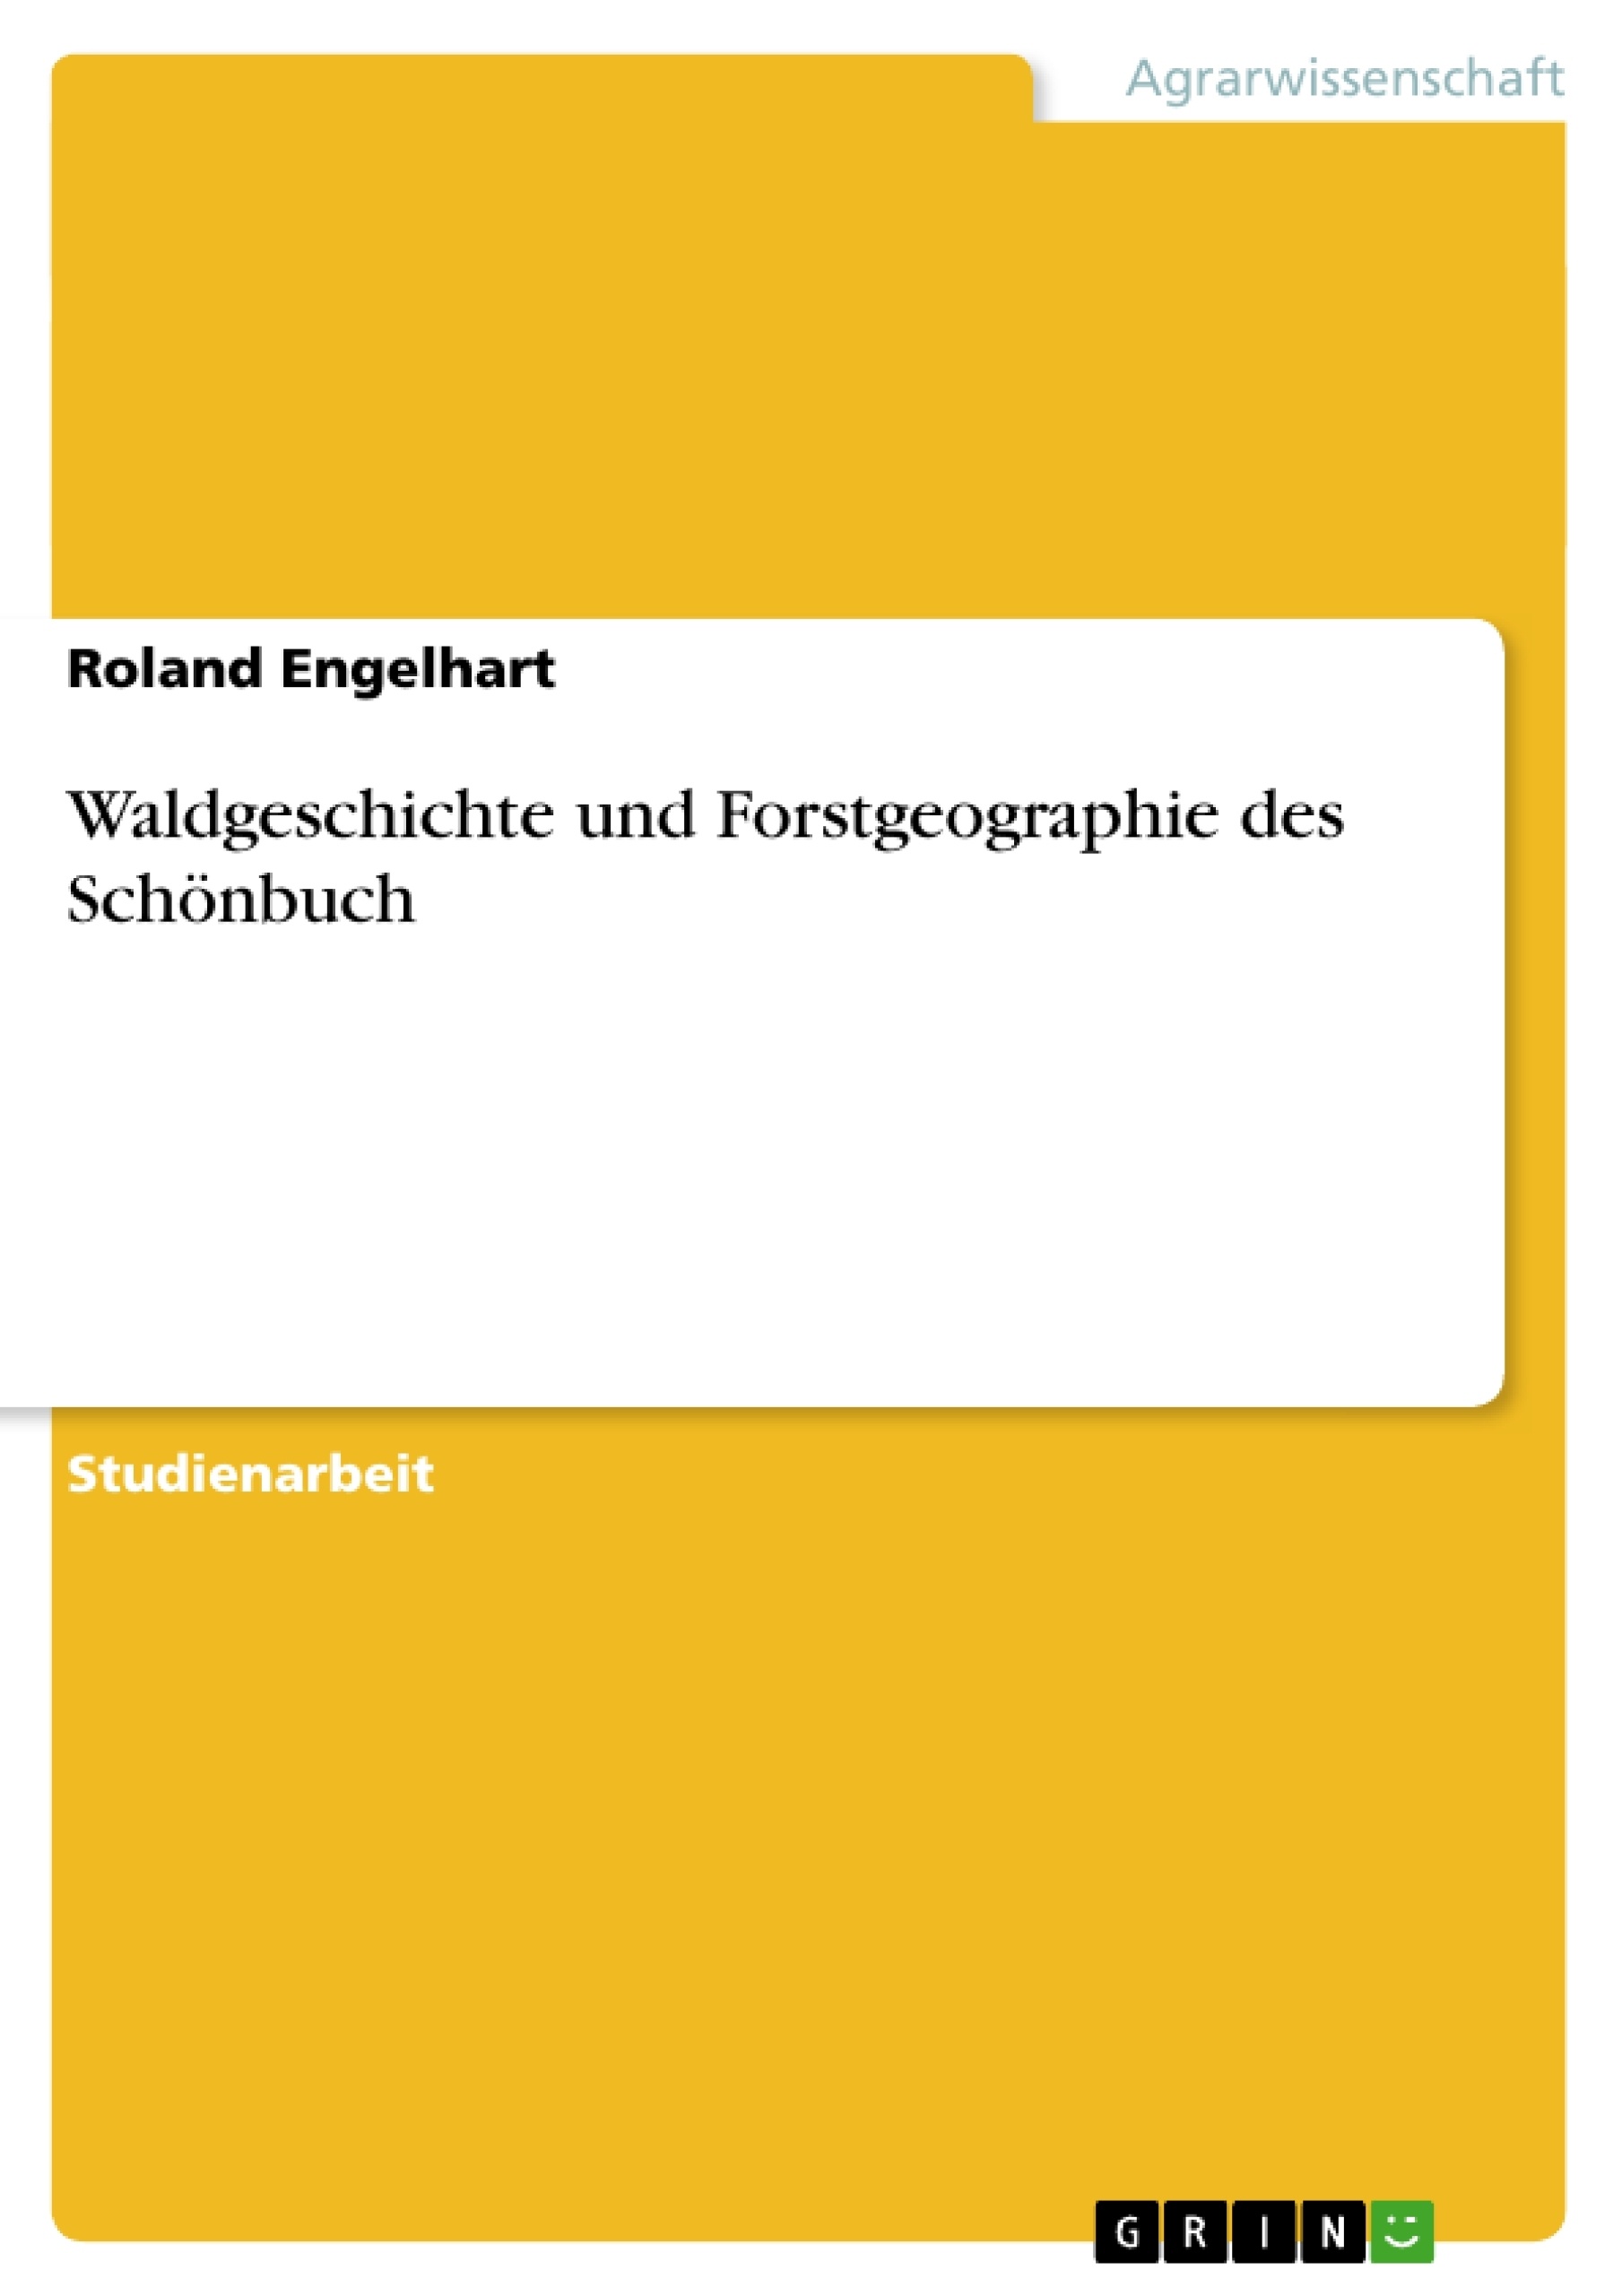 Título: Waldgeschichte und Forstgeographie des Schönbuch